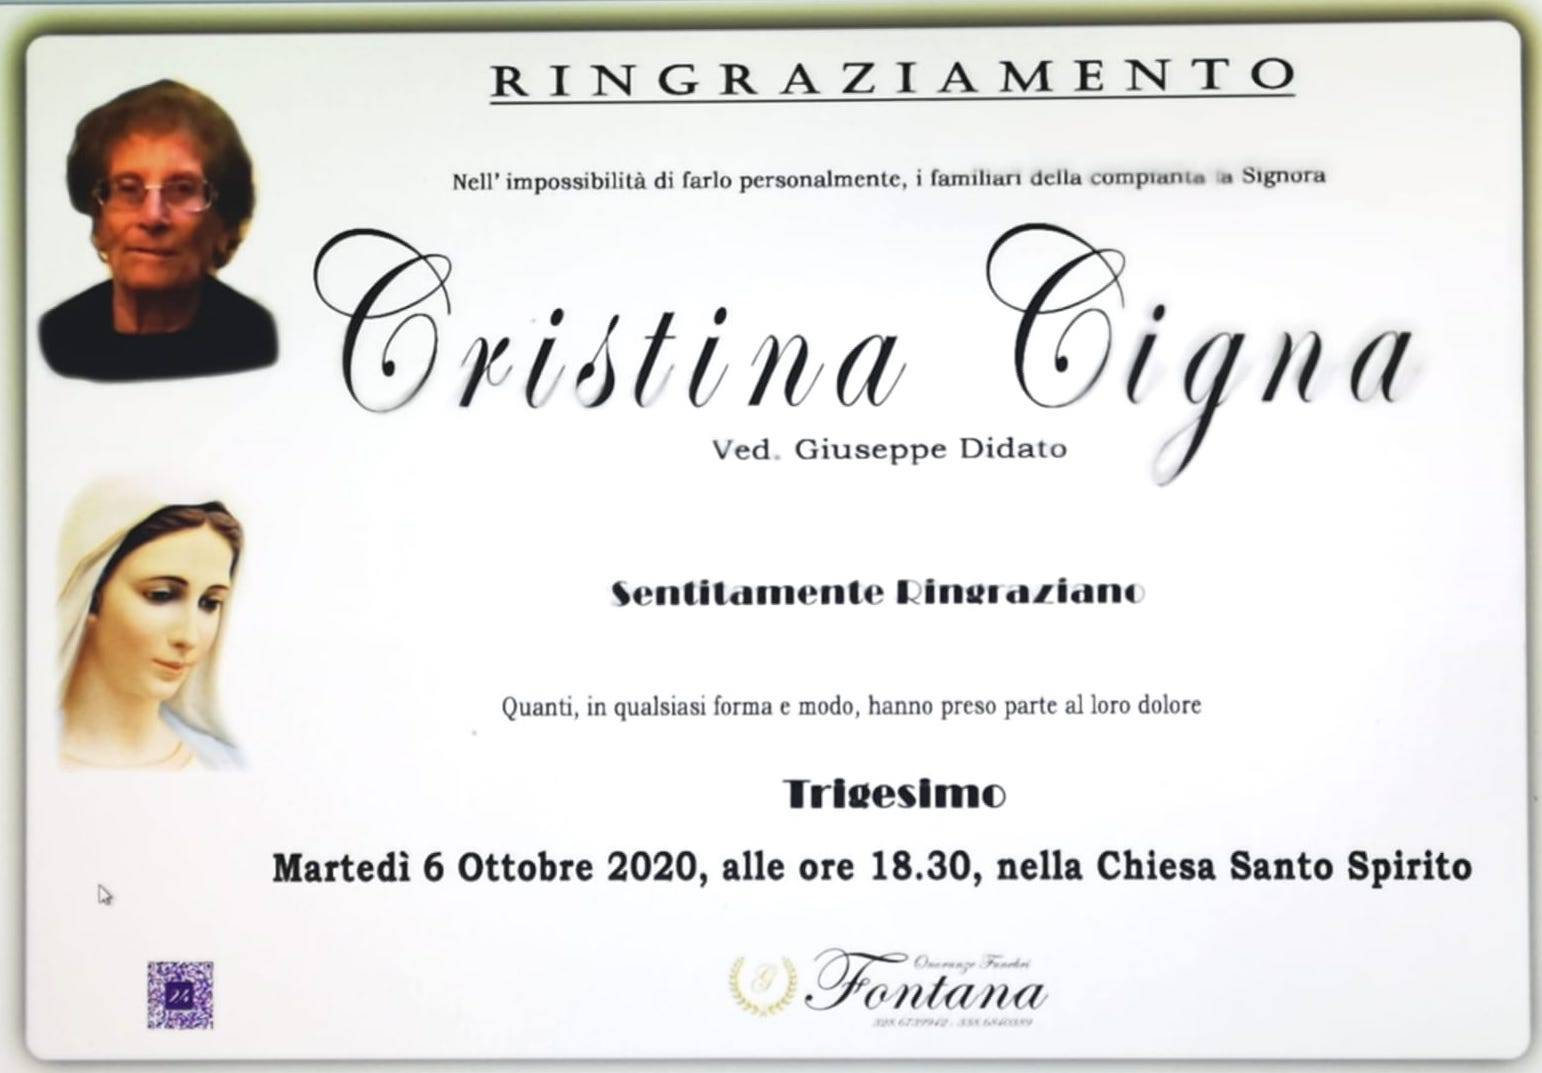 Cristina Cigna